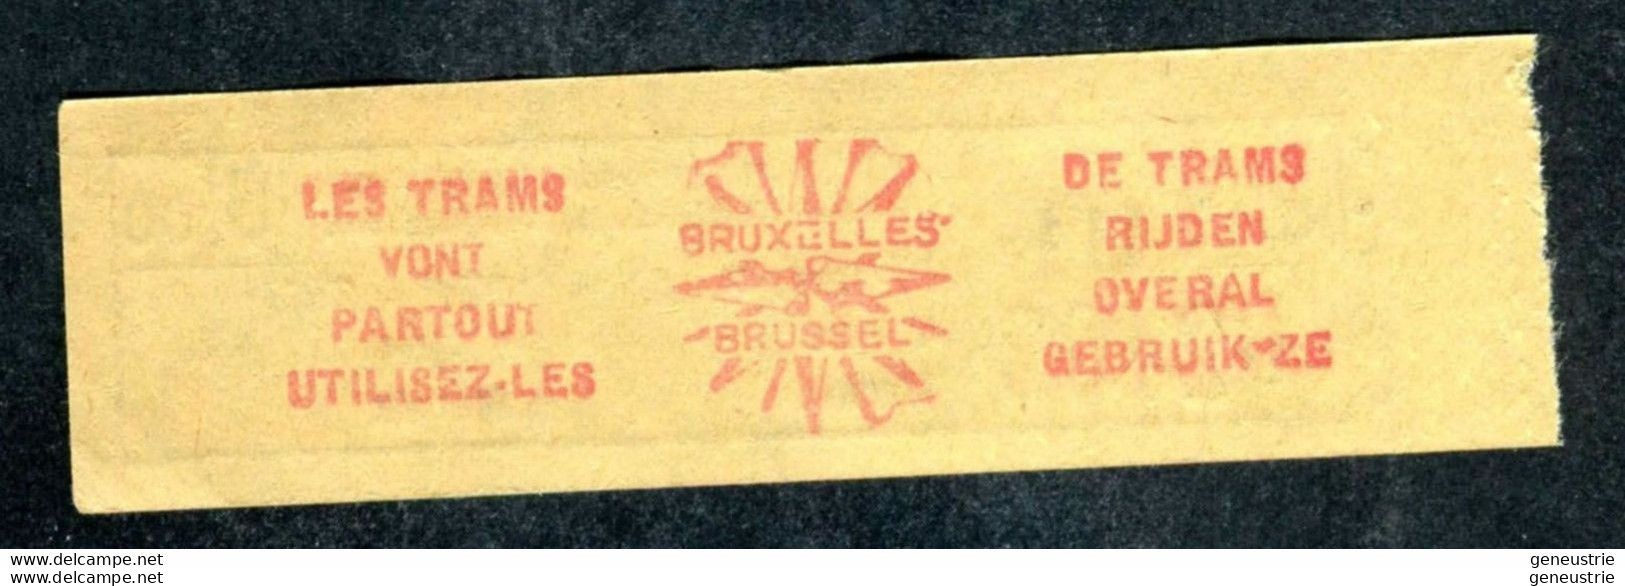 Ticket De Tramways Bruxellois Années 40/50 - Billet Tramway Bruxelles - Belgique - Europe